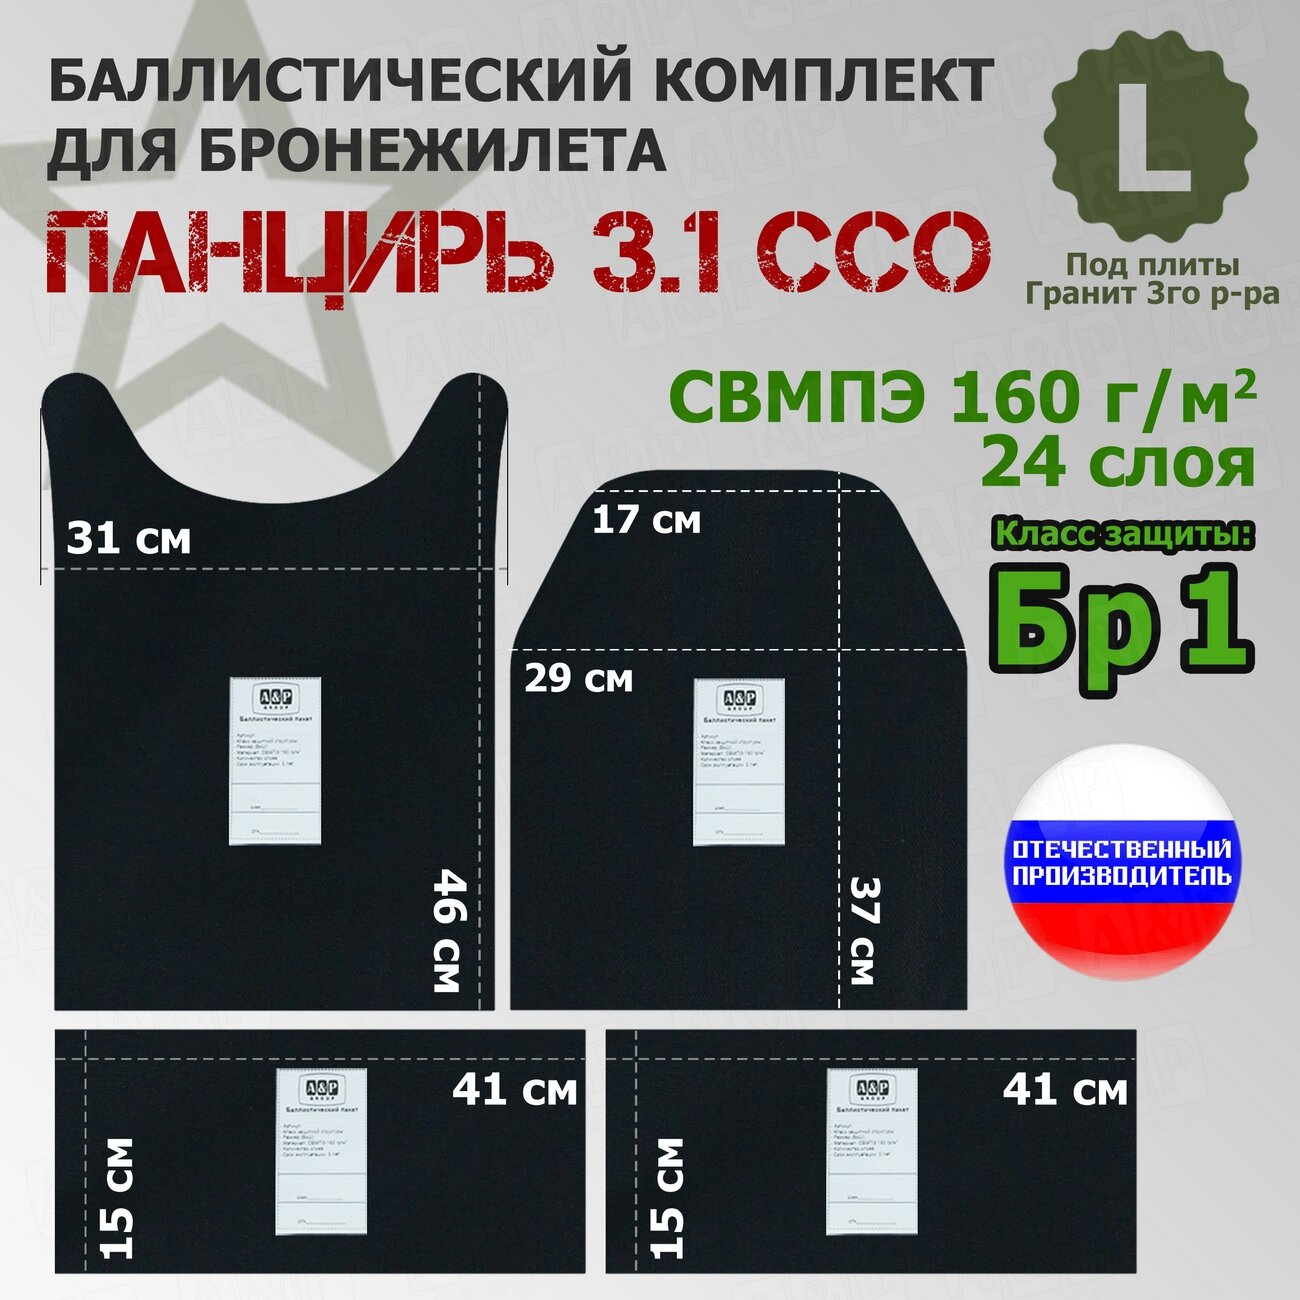 Комплект баллистических пакетов для плитника "Панцирь 3.1" (размер L) от ССО. Класс защитной структуры Бр 1.